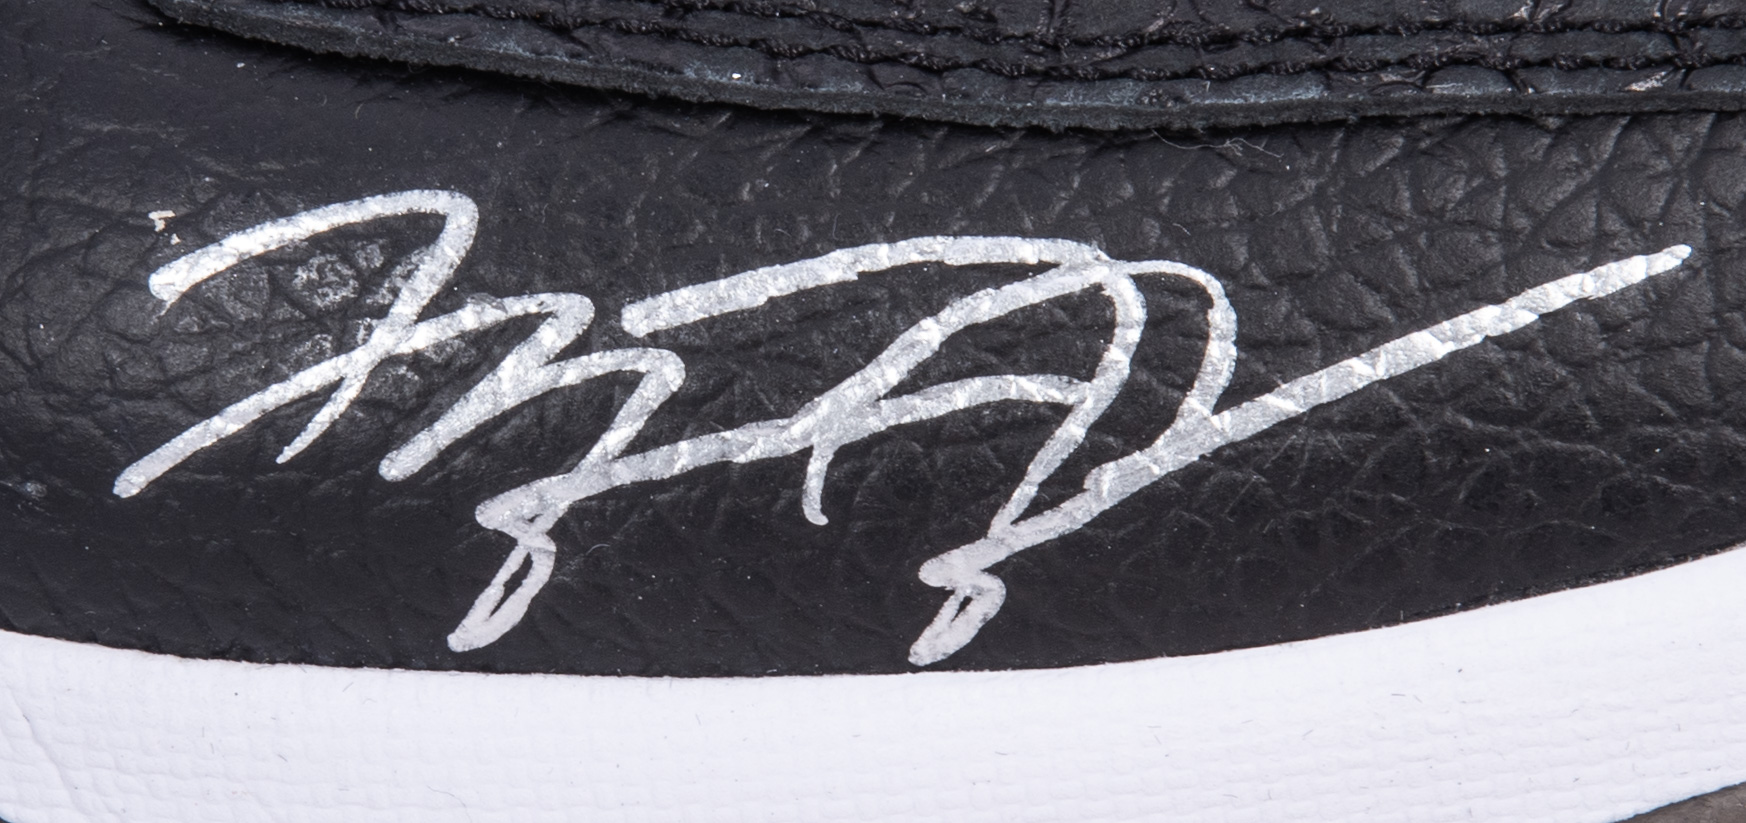 Lot Detail - Michael Jordan Signed Pair of Nike Air Jordan 11's Black ...